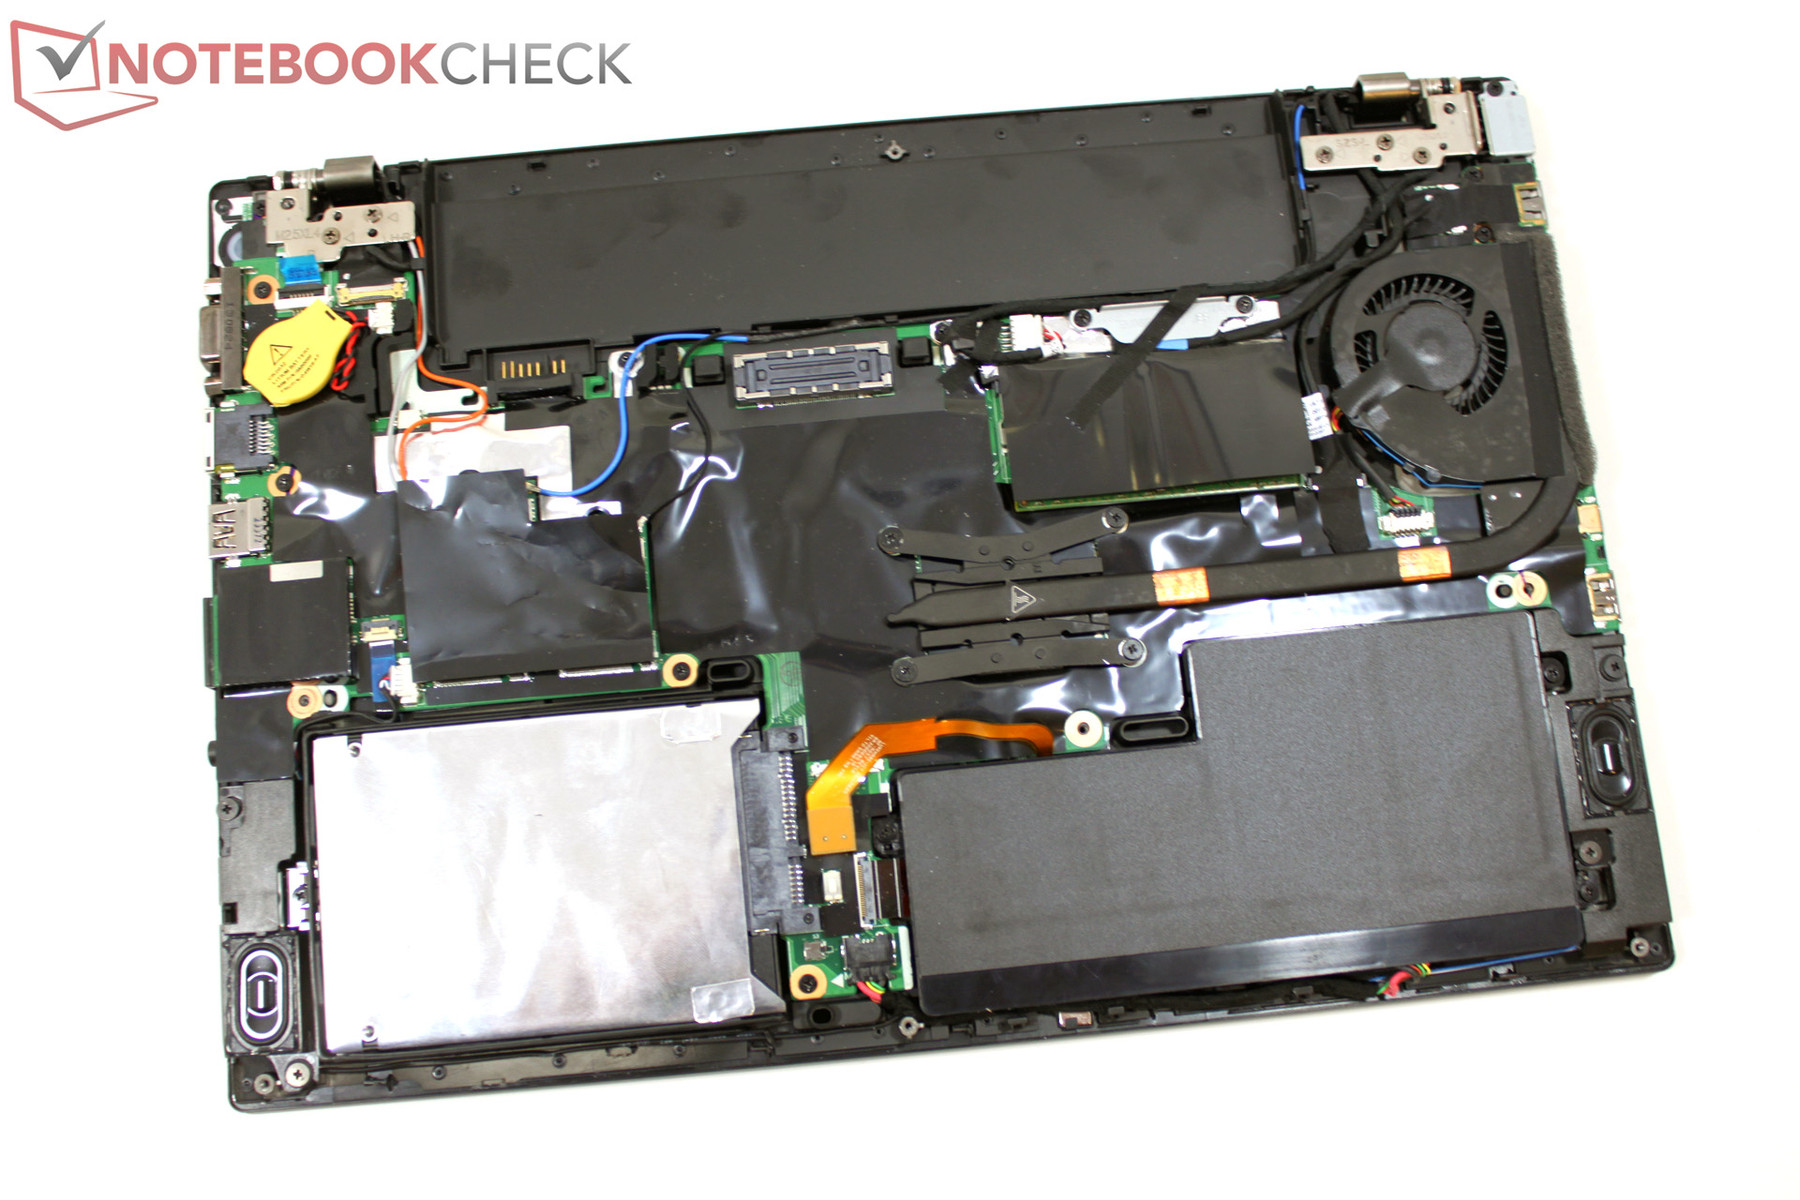 Lenovo Thinkpad T440 Memory Slots